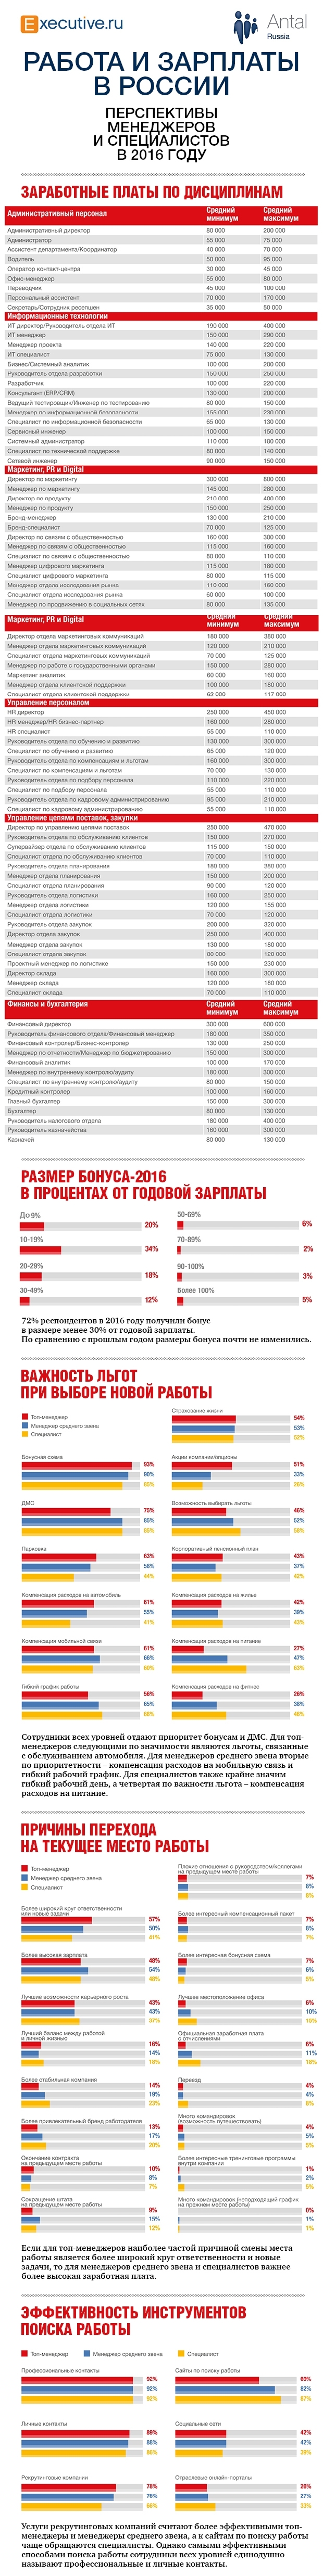 Исследование зарплат менеджеров в России в 2016 году